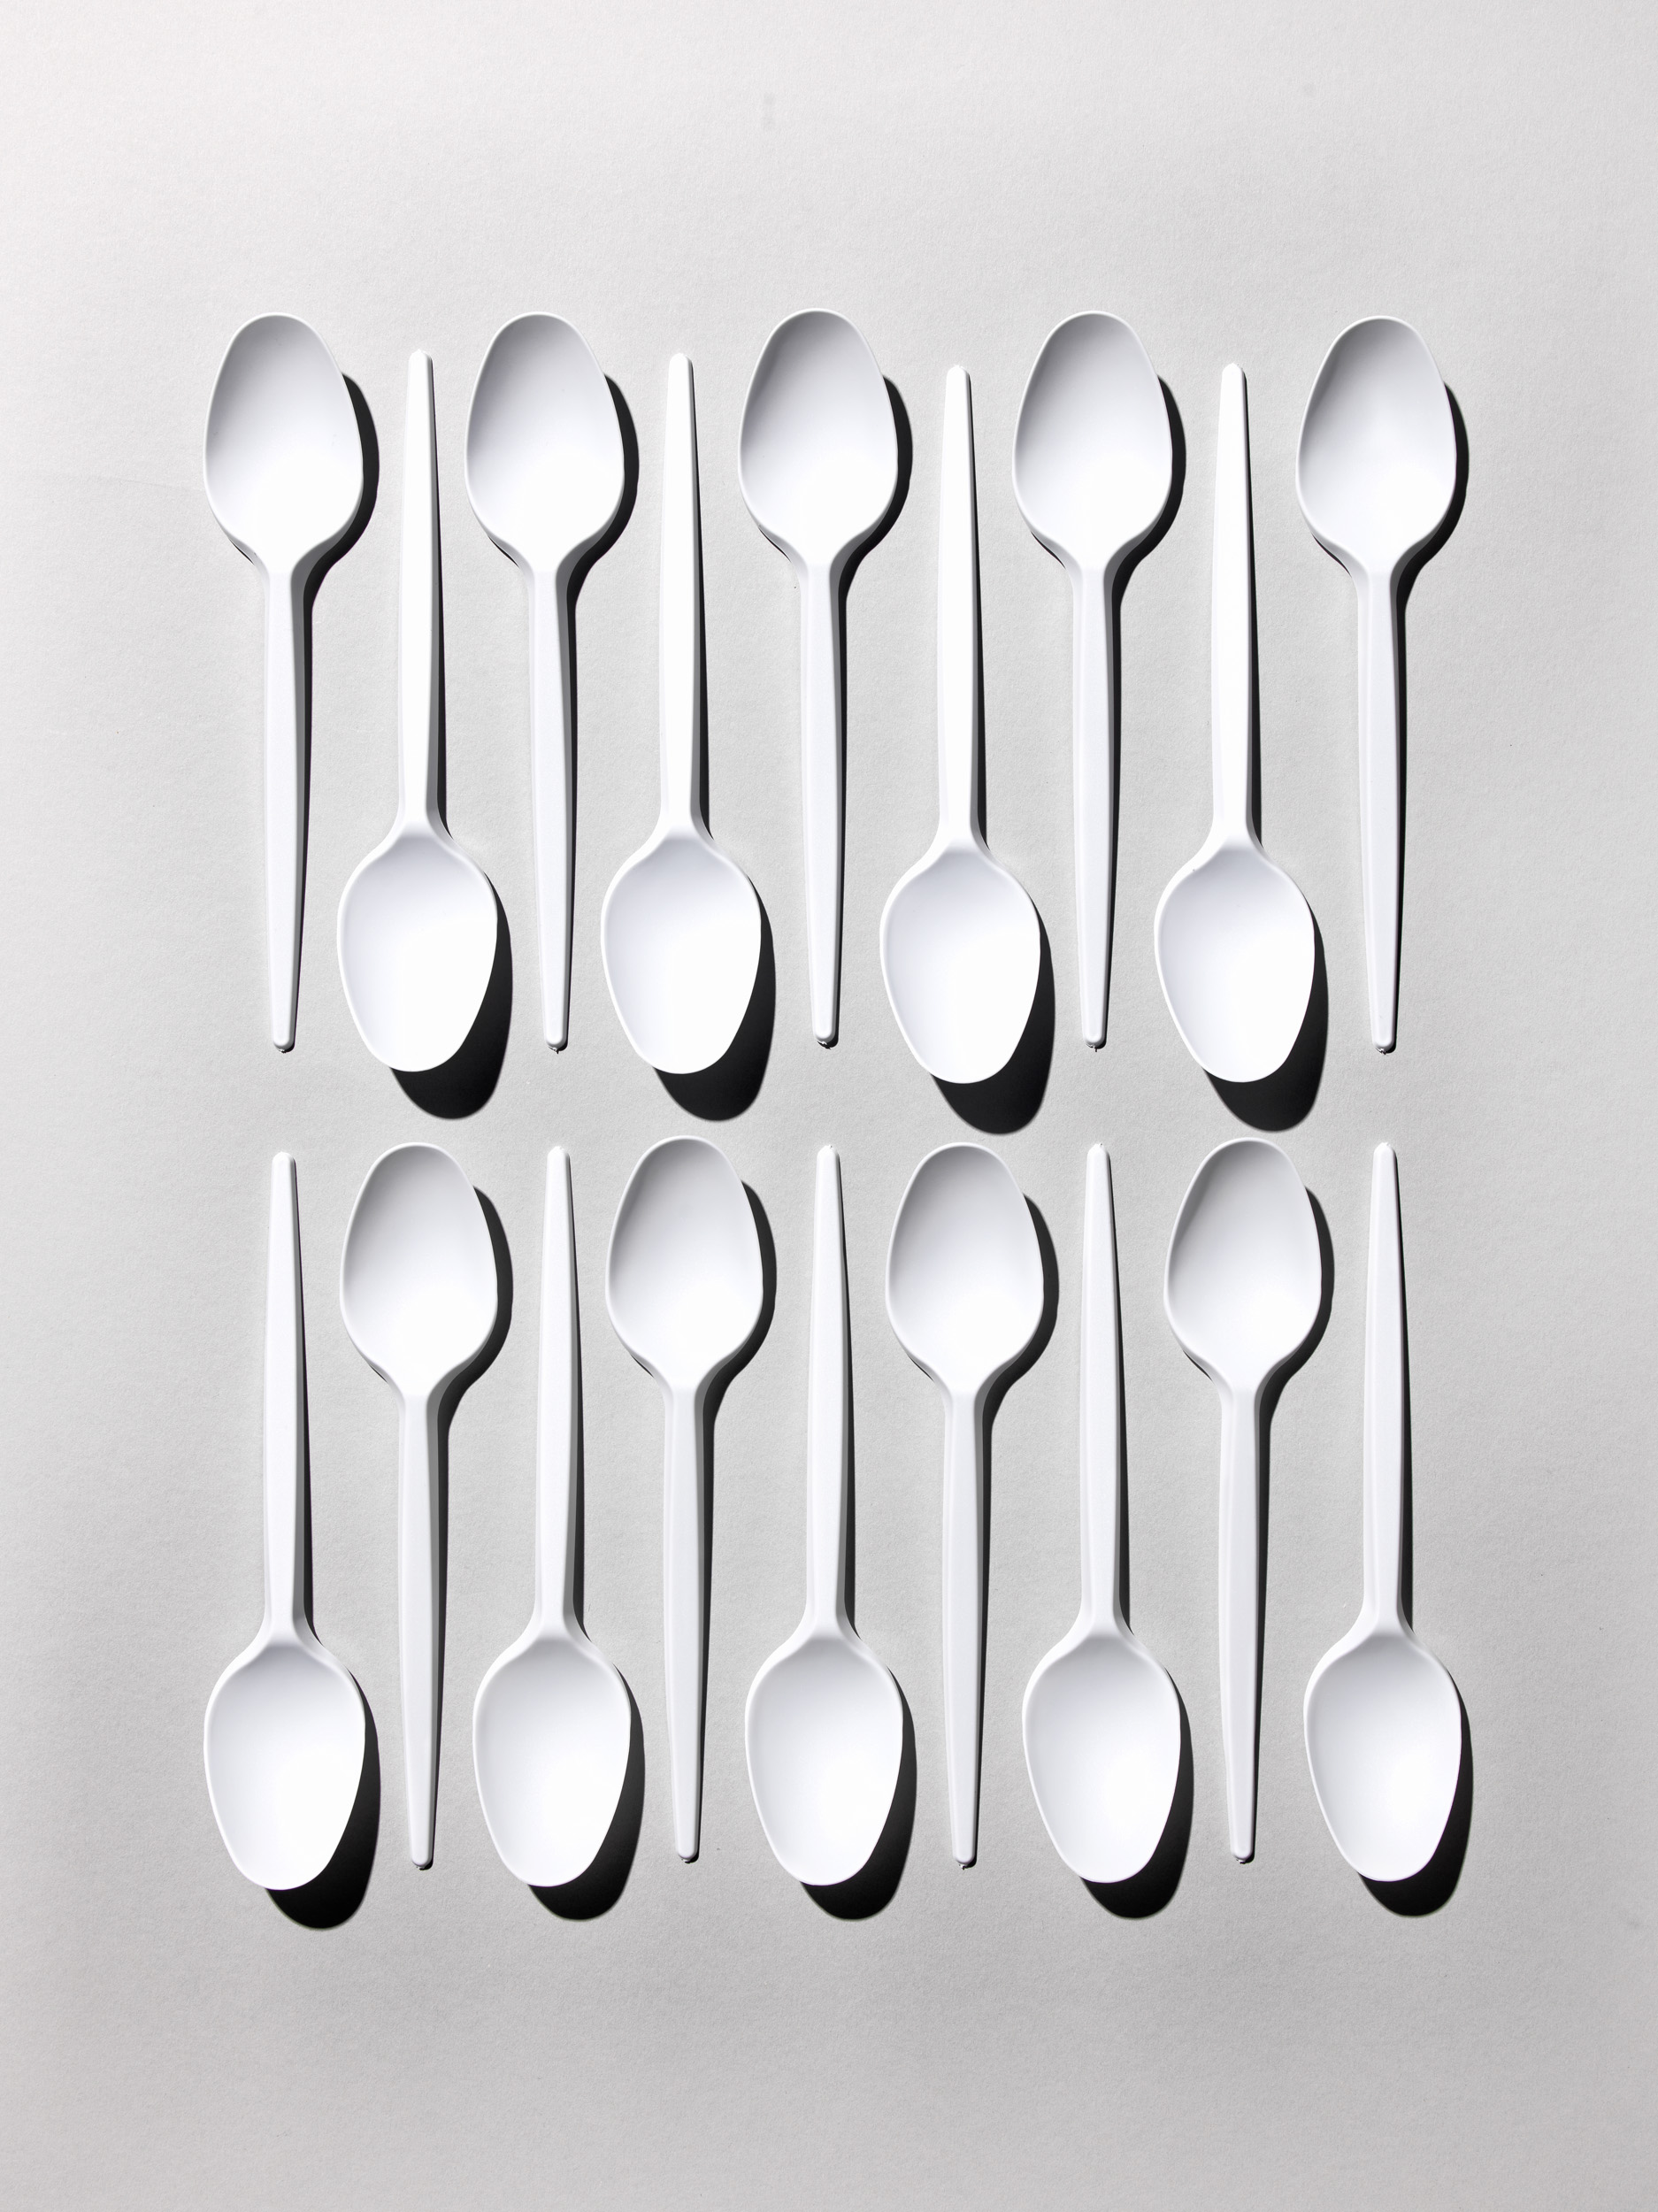 Plastic Spoons.jpg